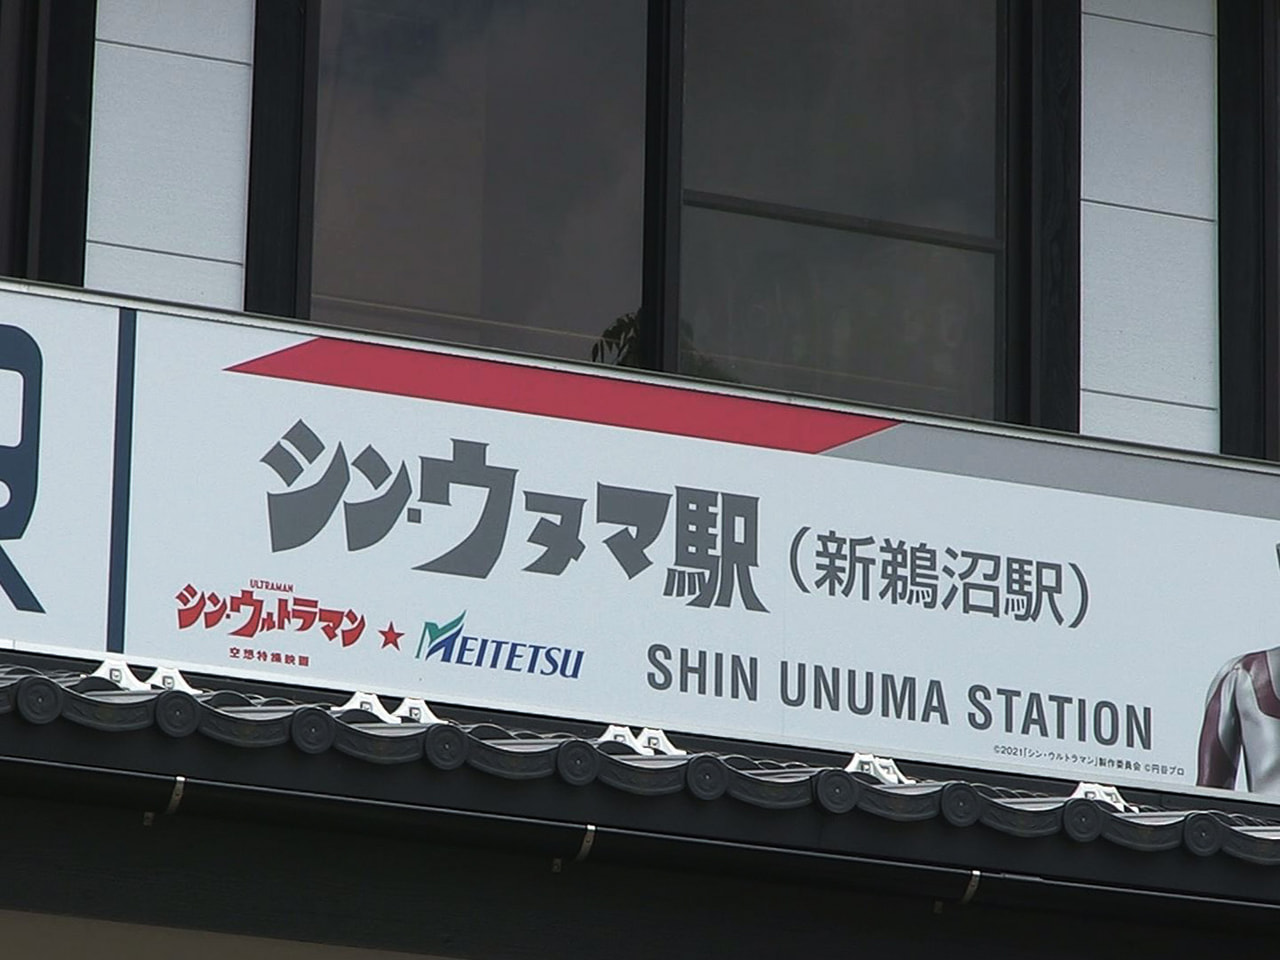 名古屋鉄道が映画「シン・ウルトラマン」の公開を前に、駅名の看板などをシン・ウルト...